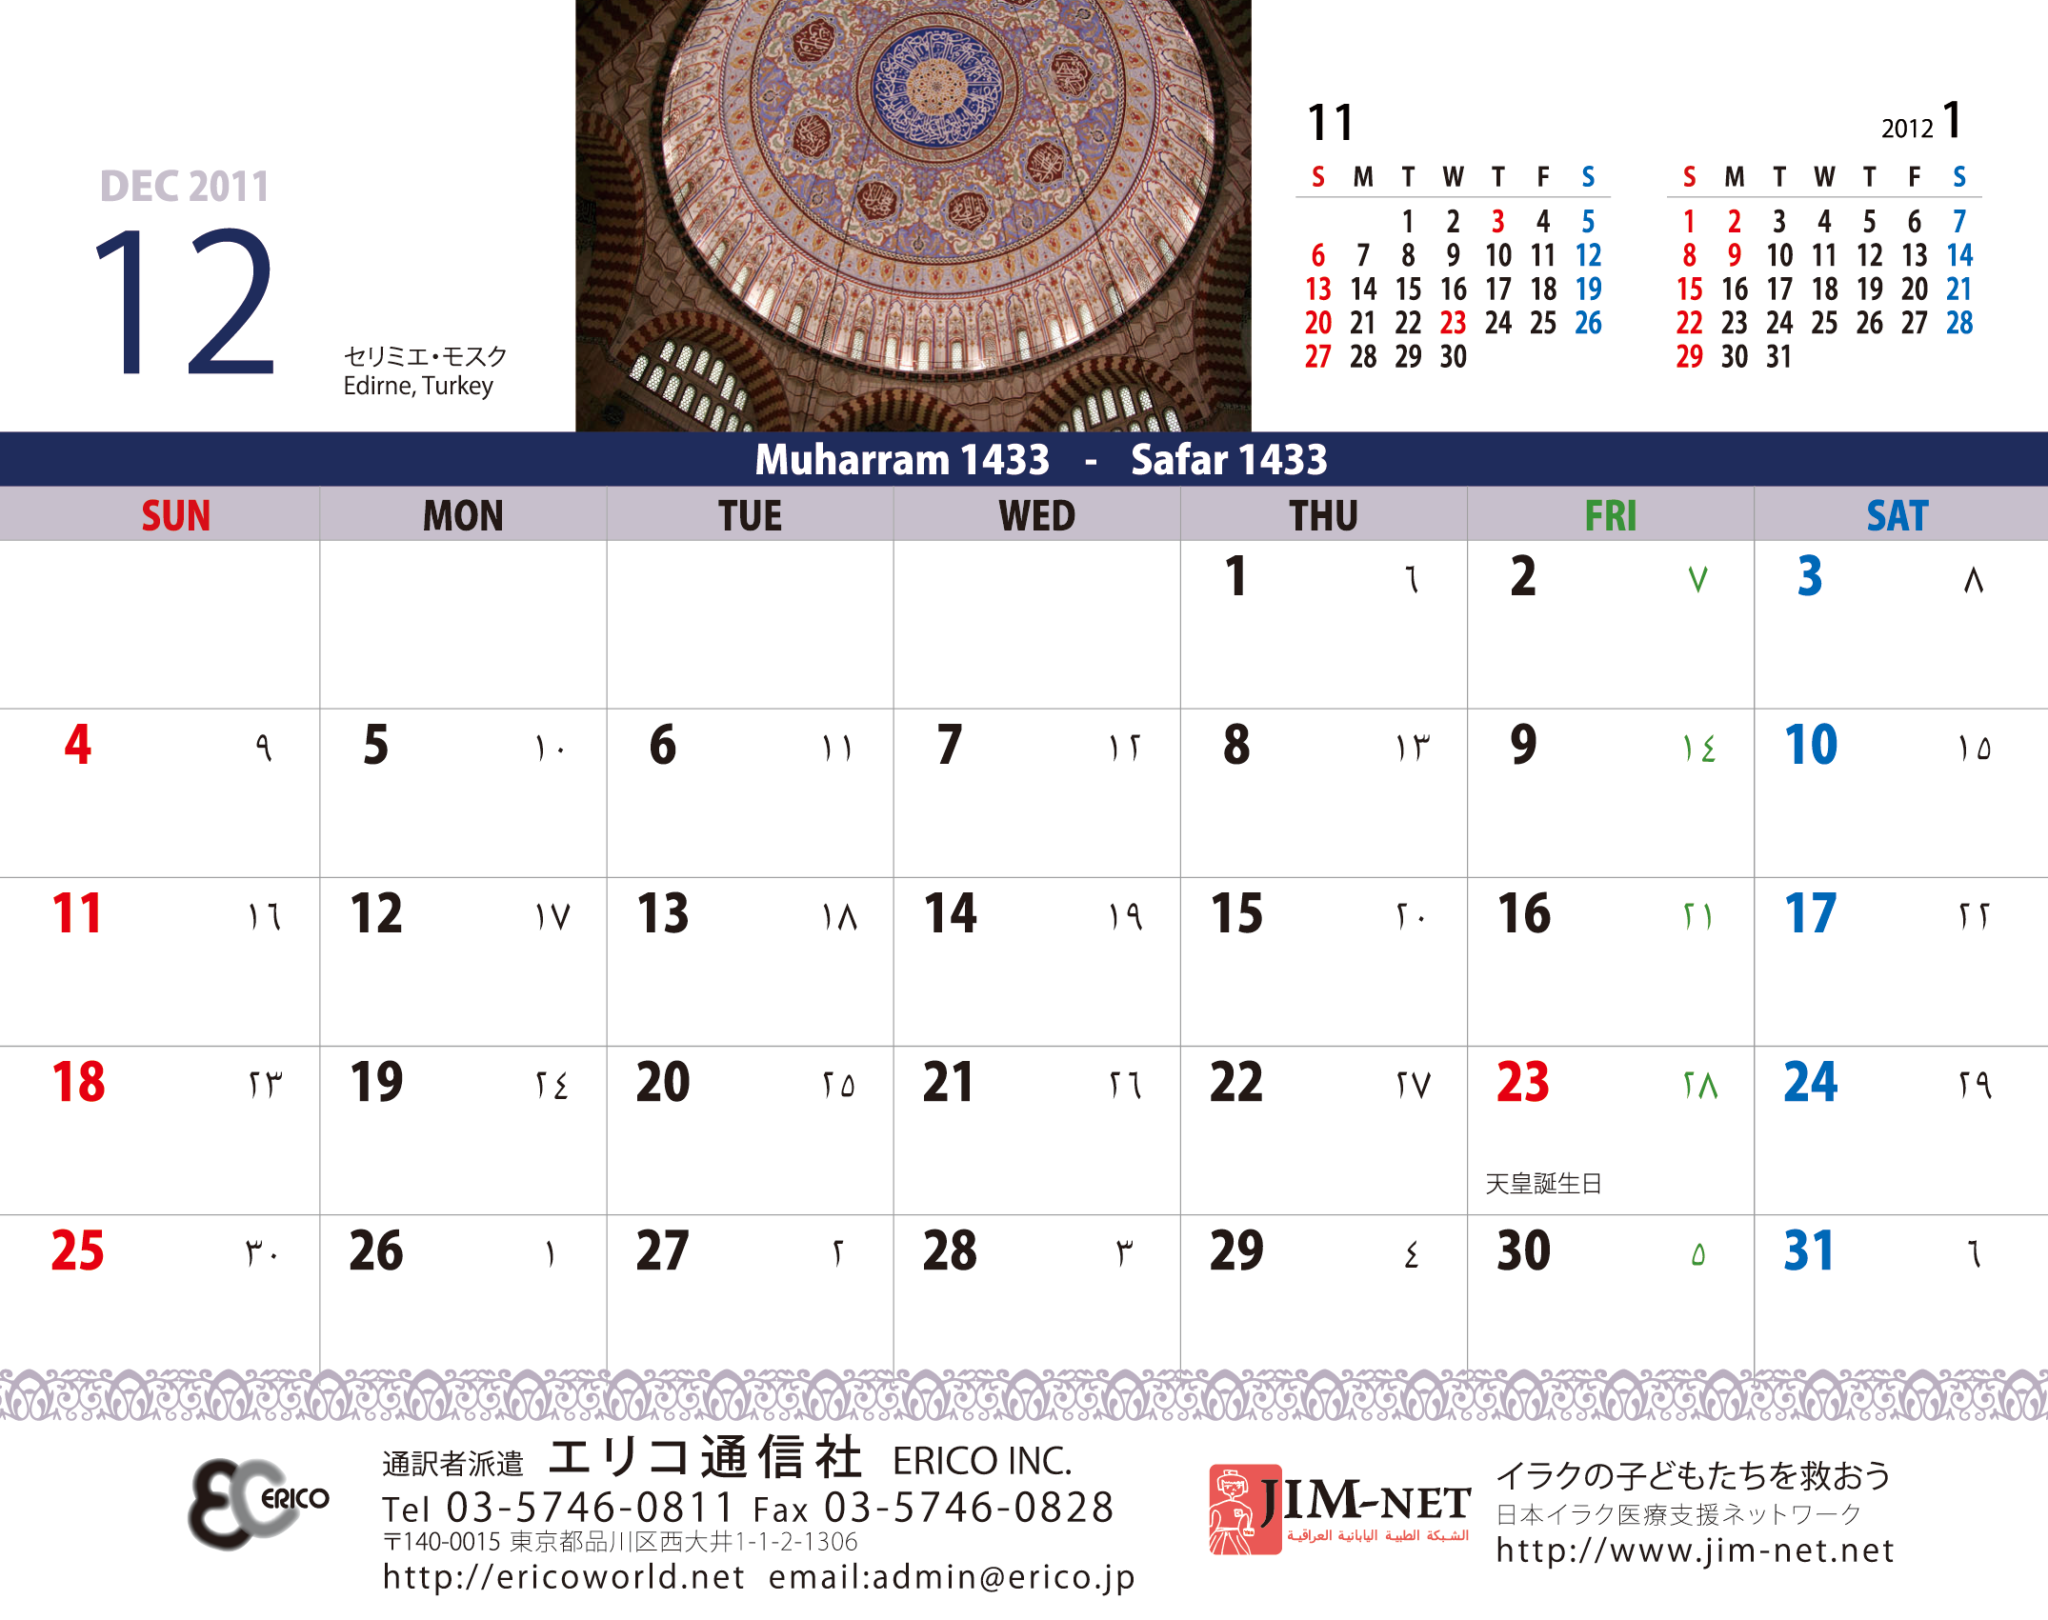 2011年12月のカレンダー									20152014201320122011Other activity